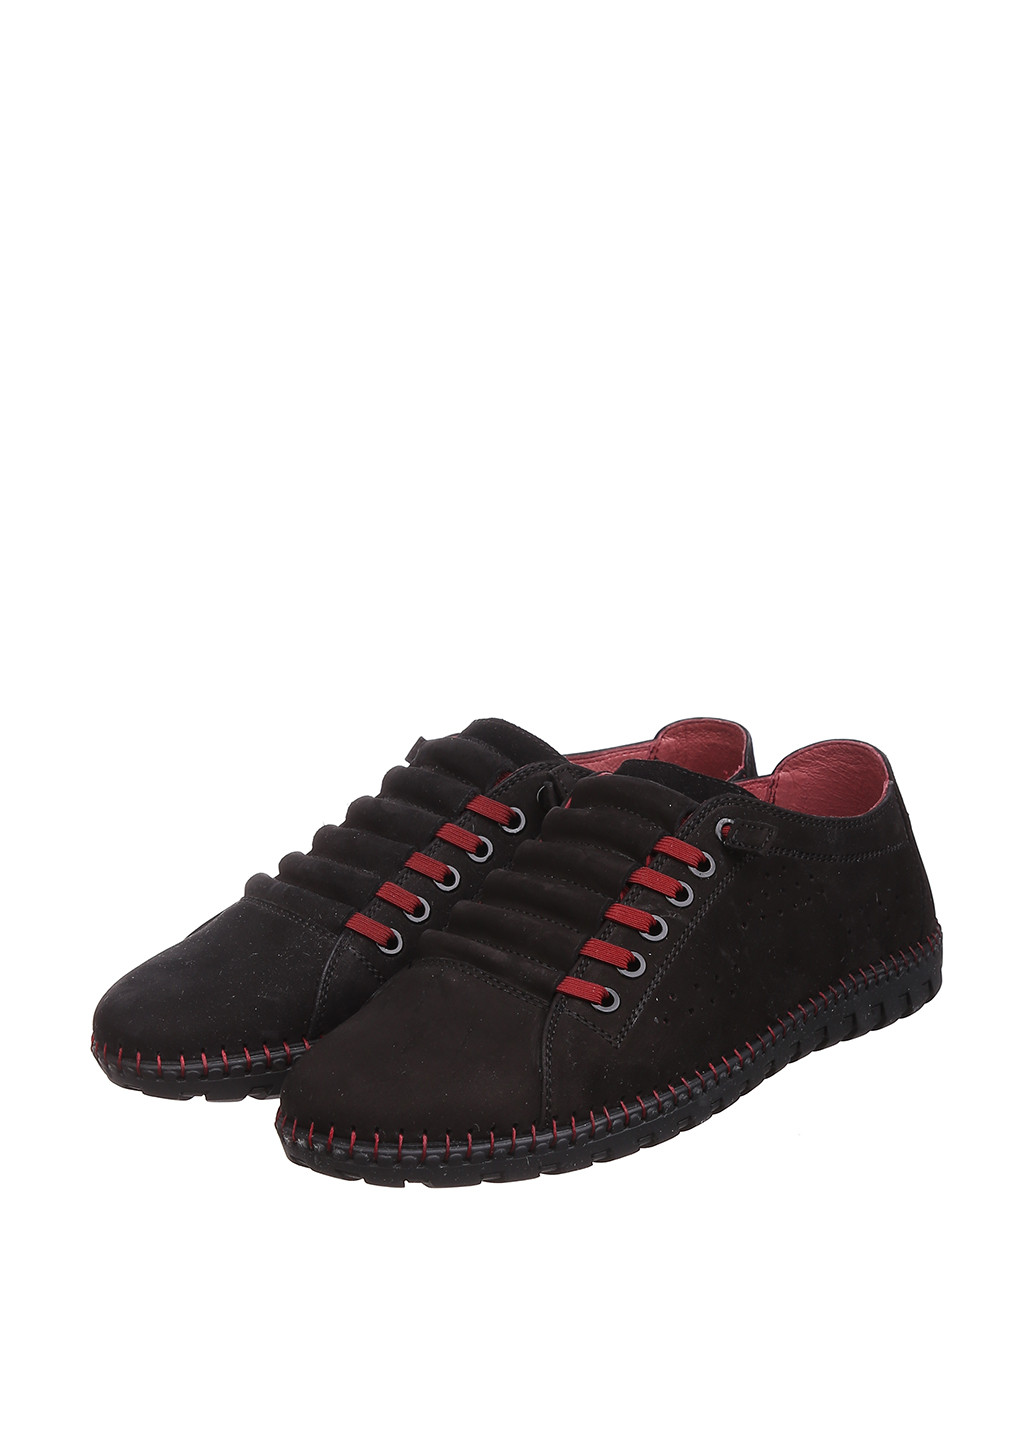 Черные спортивные туфли Corso Vito на шнурках